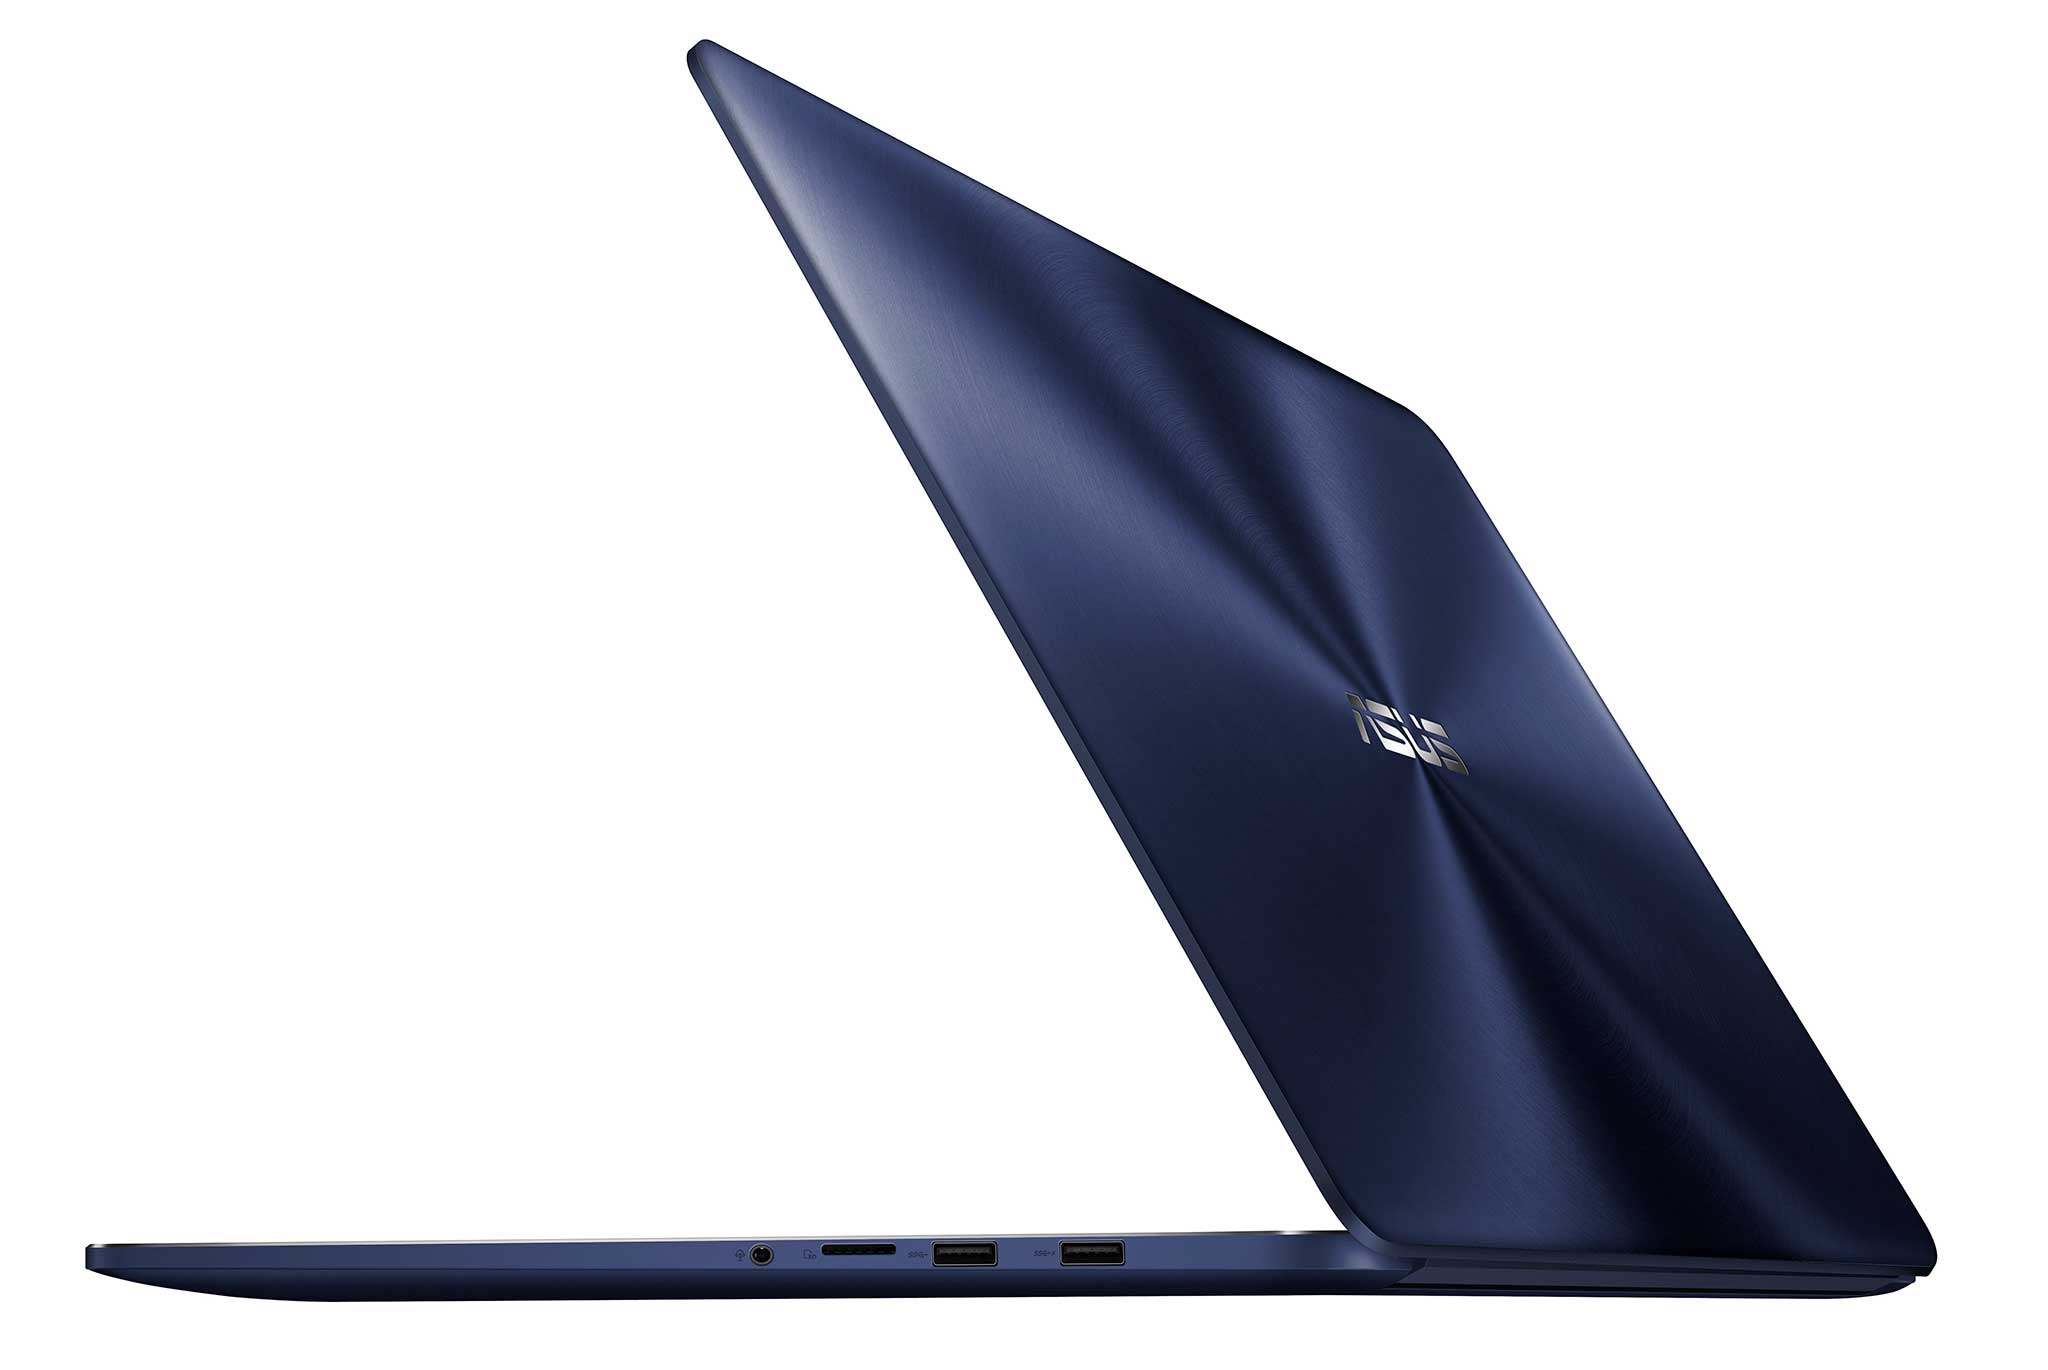 Asus-ZenBook-Flip-S-1.jpg